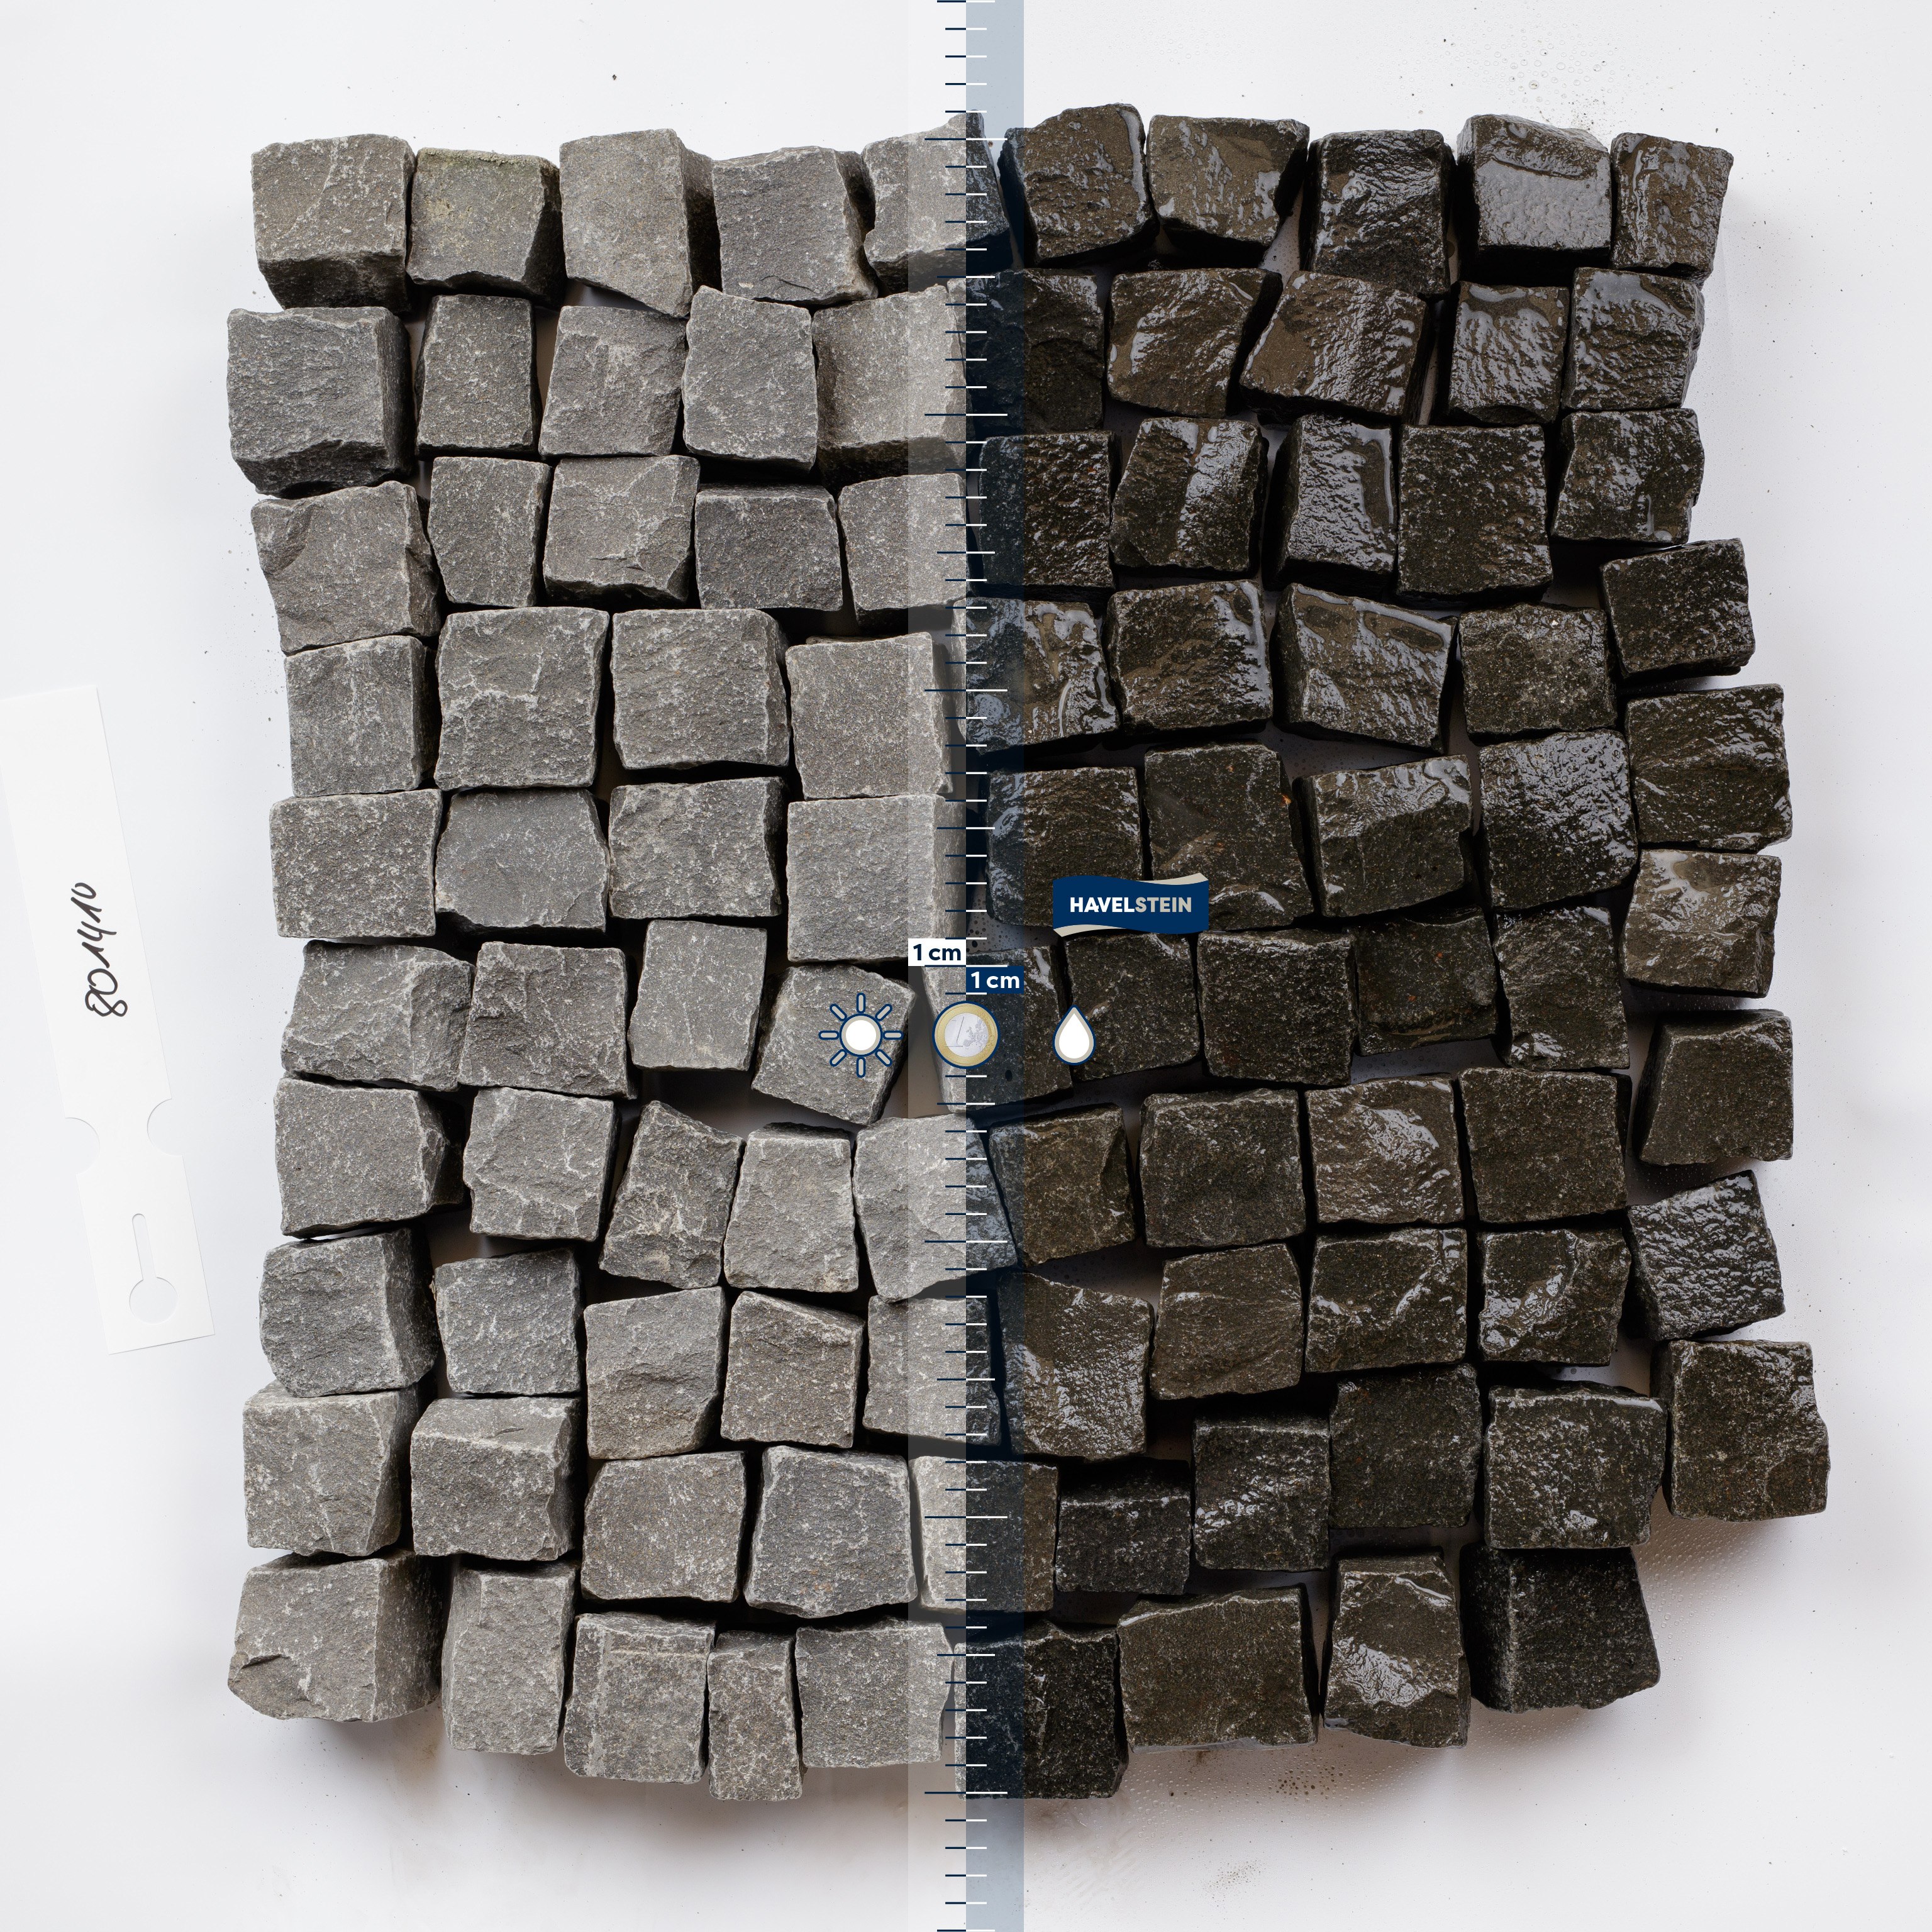 Pflasterstein, Basalt schwarz (Vietnam), Basalt Mosaikpflaster, 5 x 5 x 5 cm, Vietnam schwarz, Ergiebigkeit 1 t = ca. 8,5 m? 